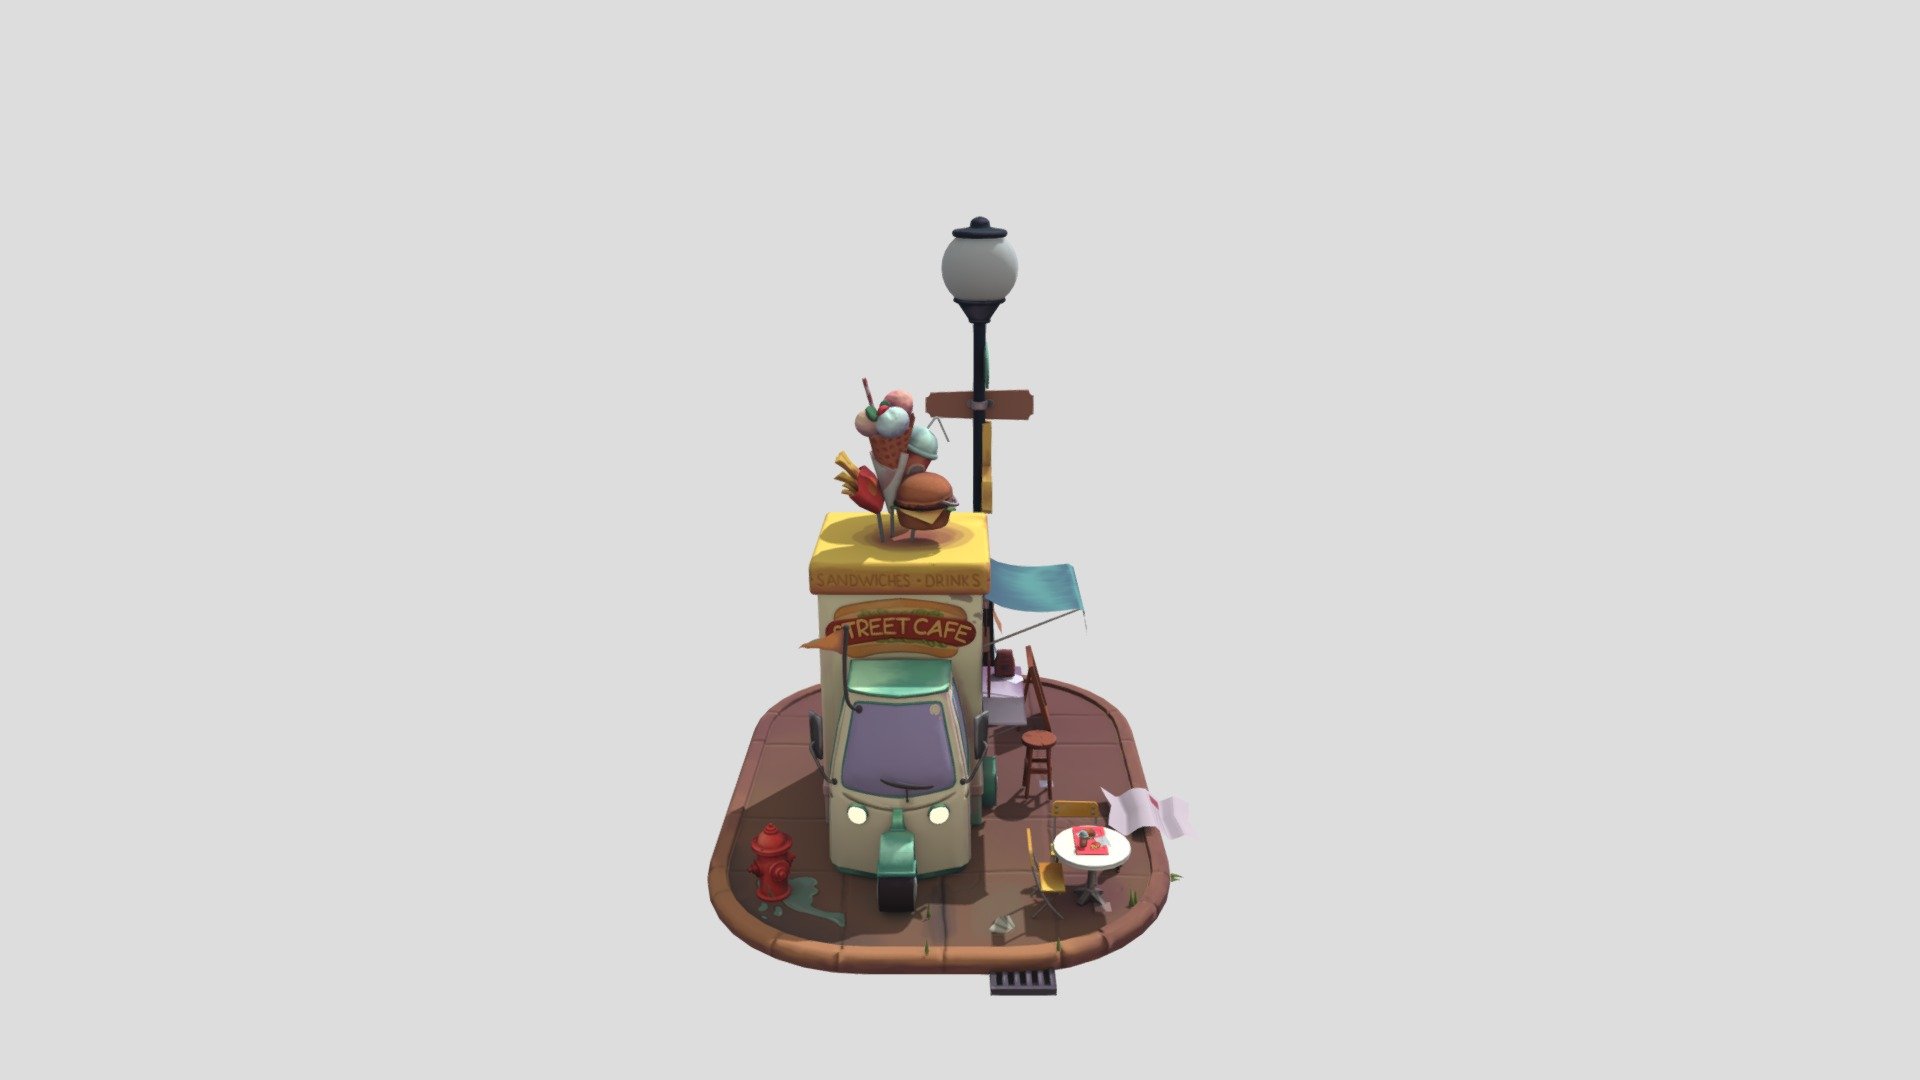 Street cafe - 3D model by FioreDiMatteo 3d model